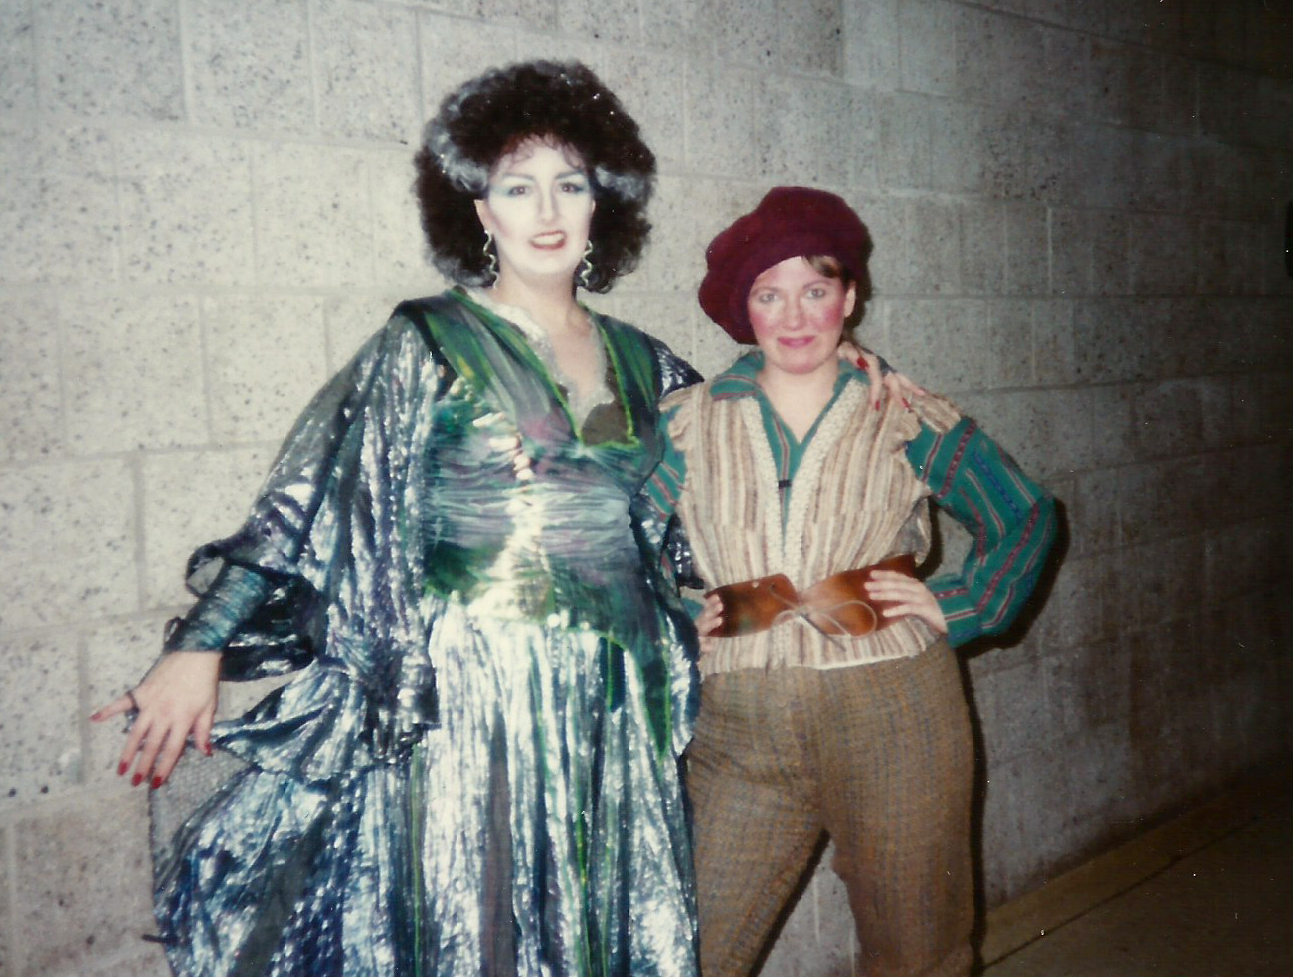 Opera at Florham, Rusalka, 1989 – Janice as Ježibaba